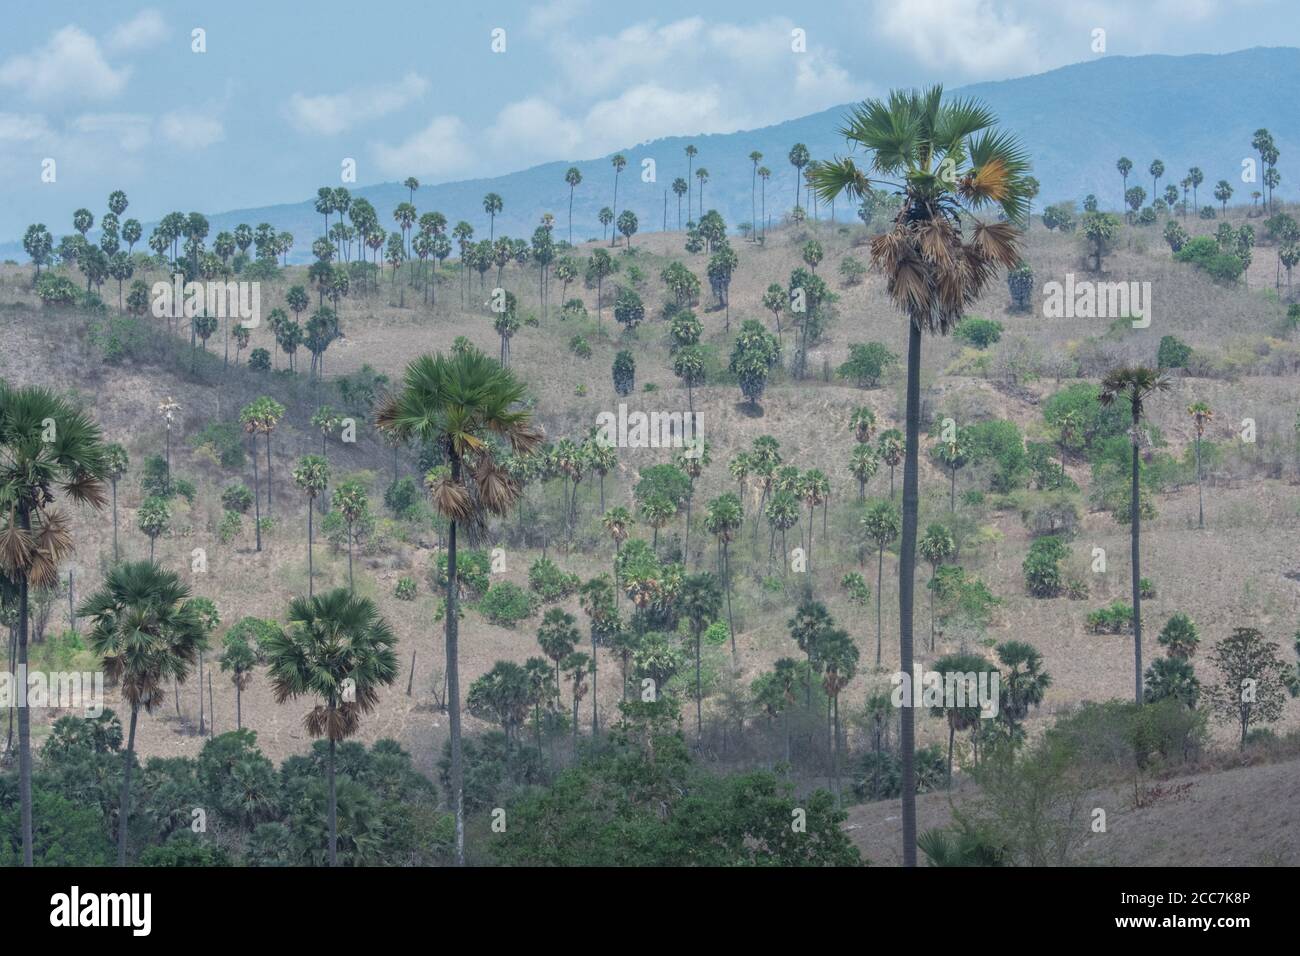 Il paesaggio dell'isola di Rinca nel Parco Nazionale di Komodo, Indonesia. La prateria secca è punteggiata da palme (fiabelliferi Borassus) e palme Corypha utan Foto Stock